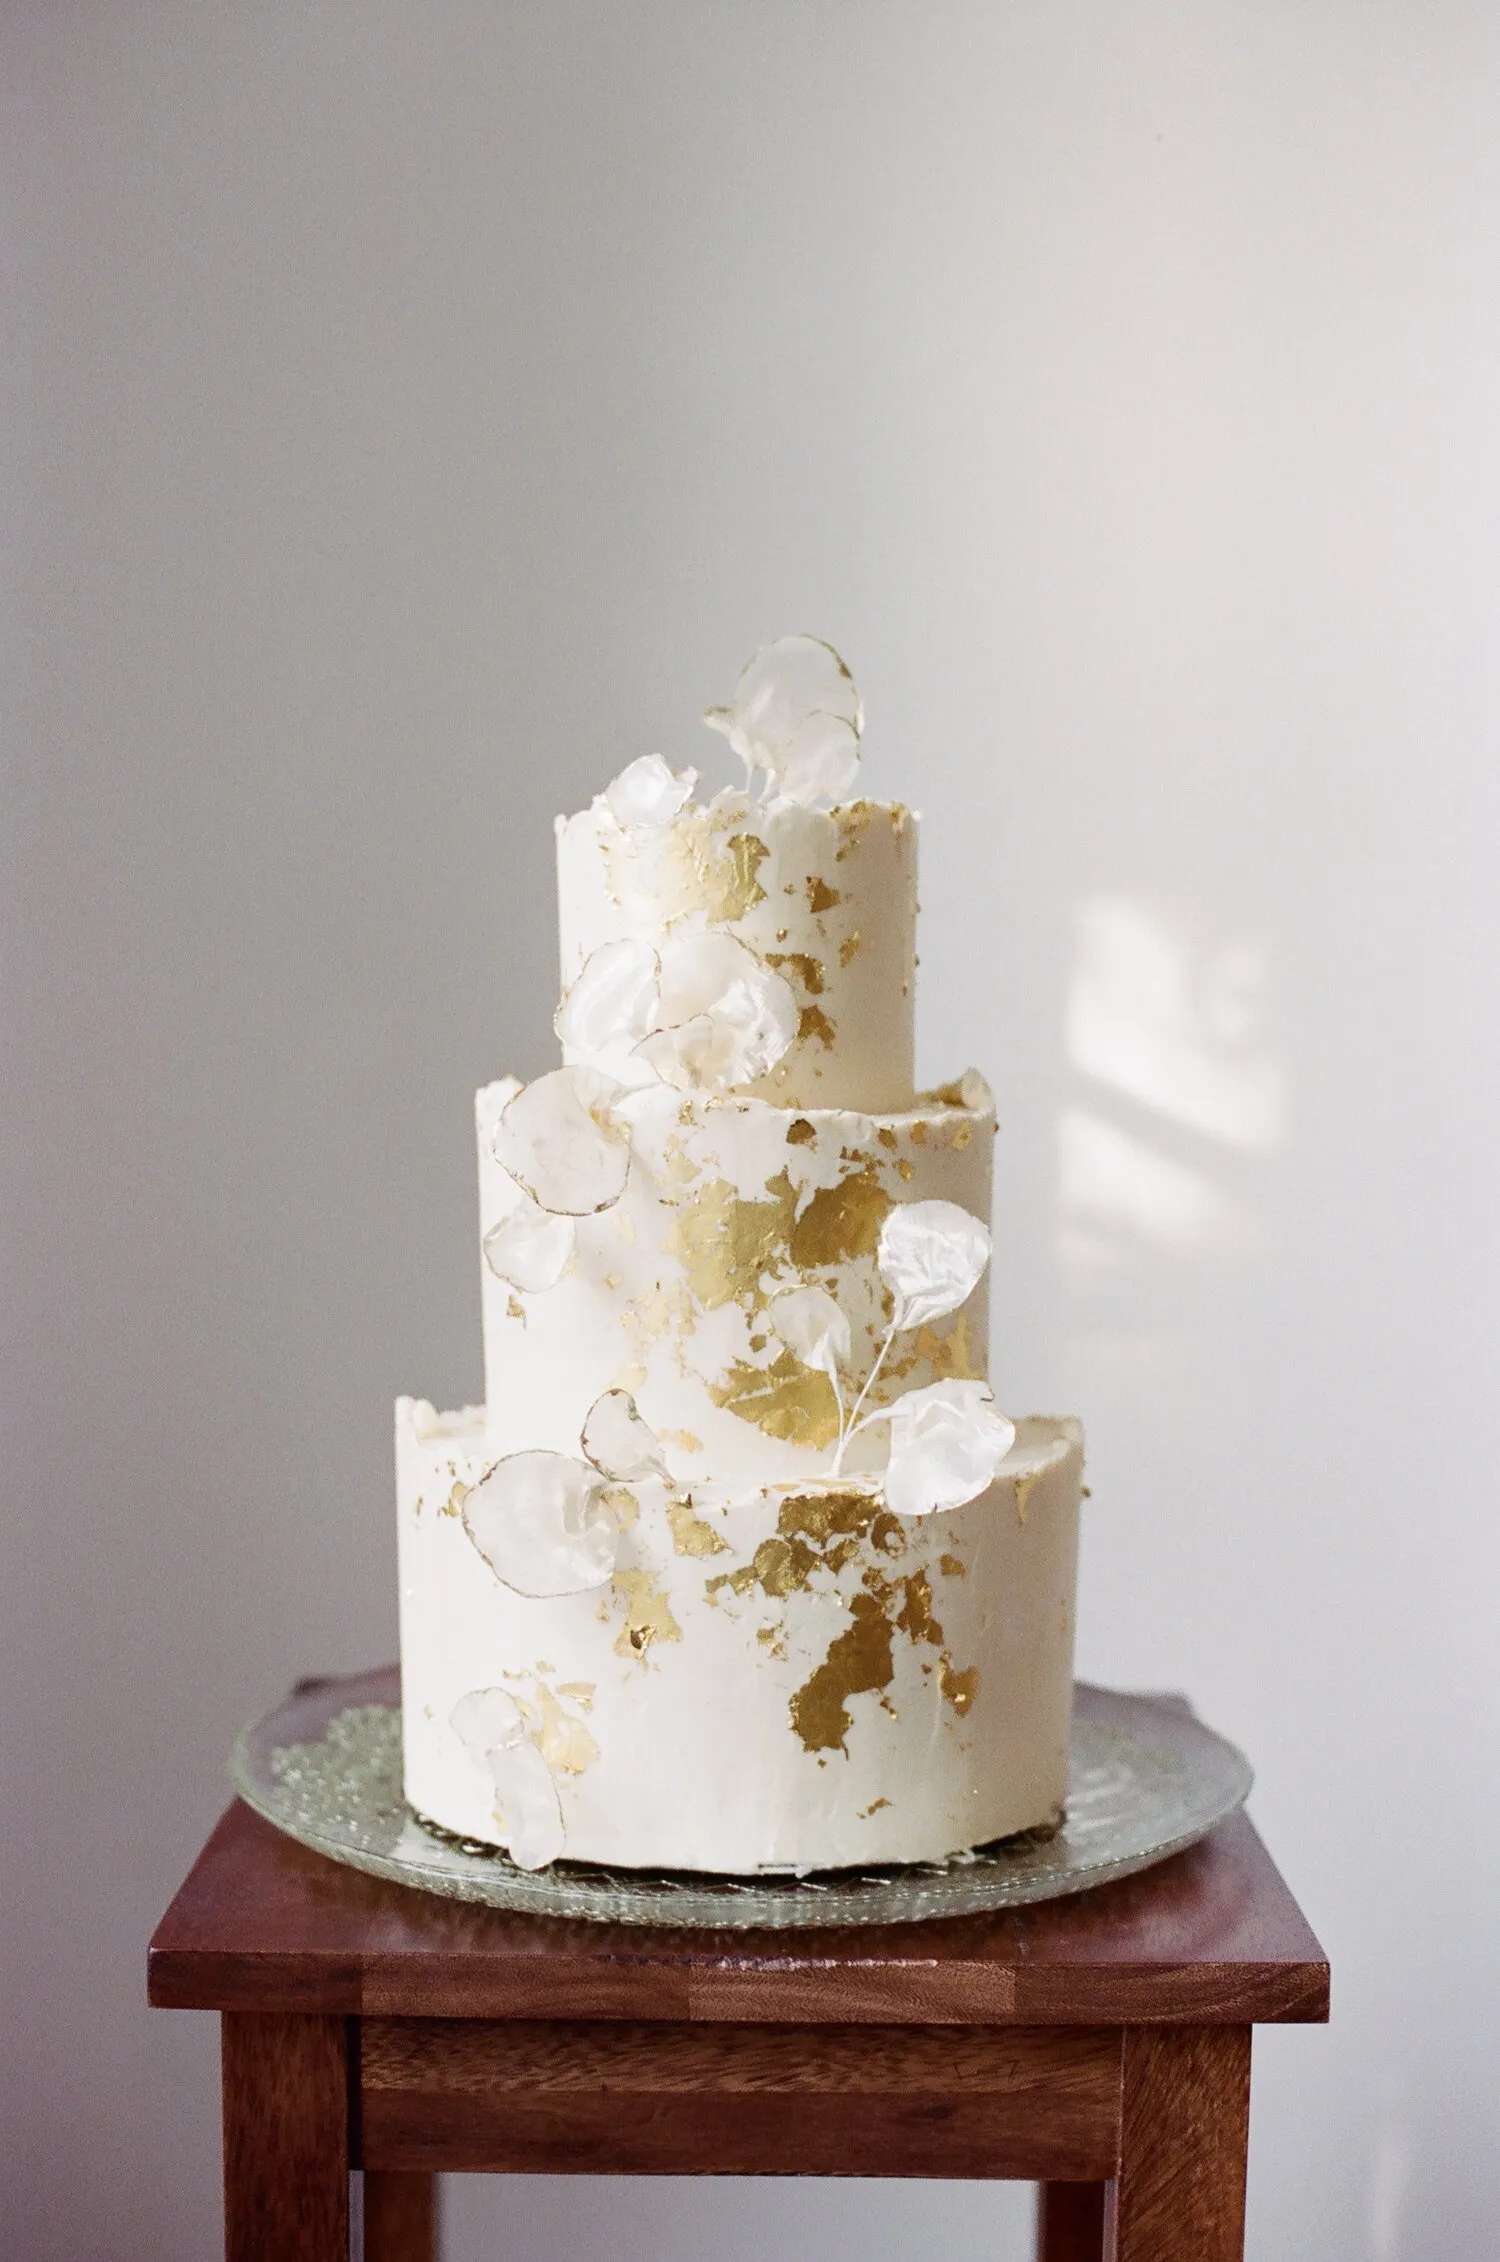 kue pernikahan sederhana tapi elegan